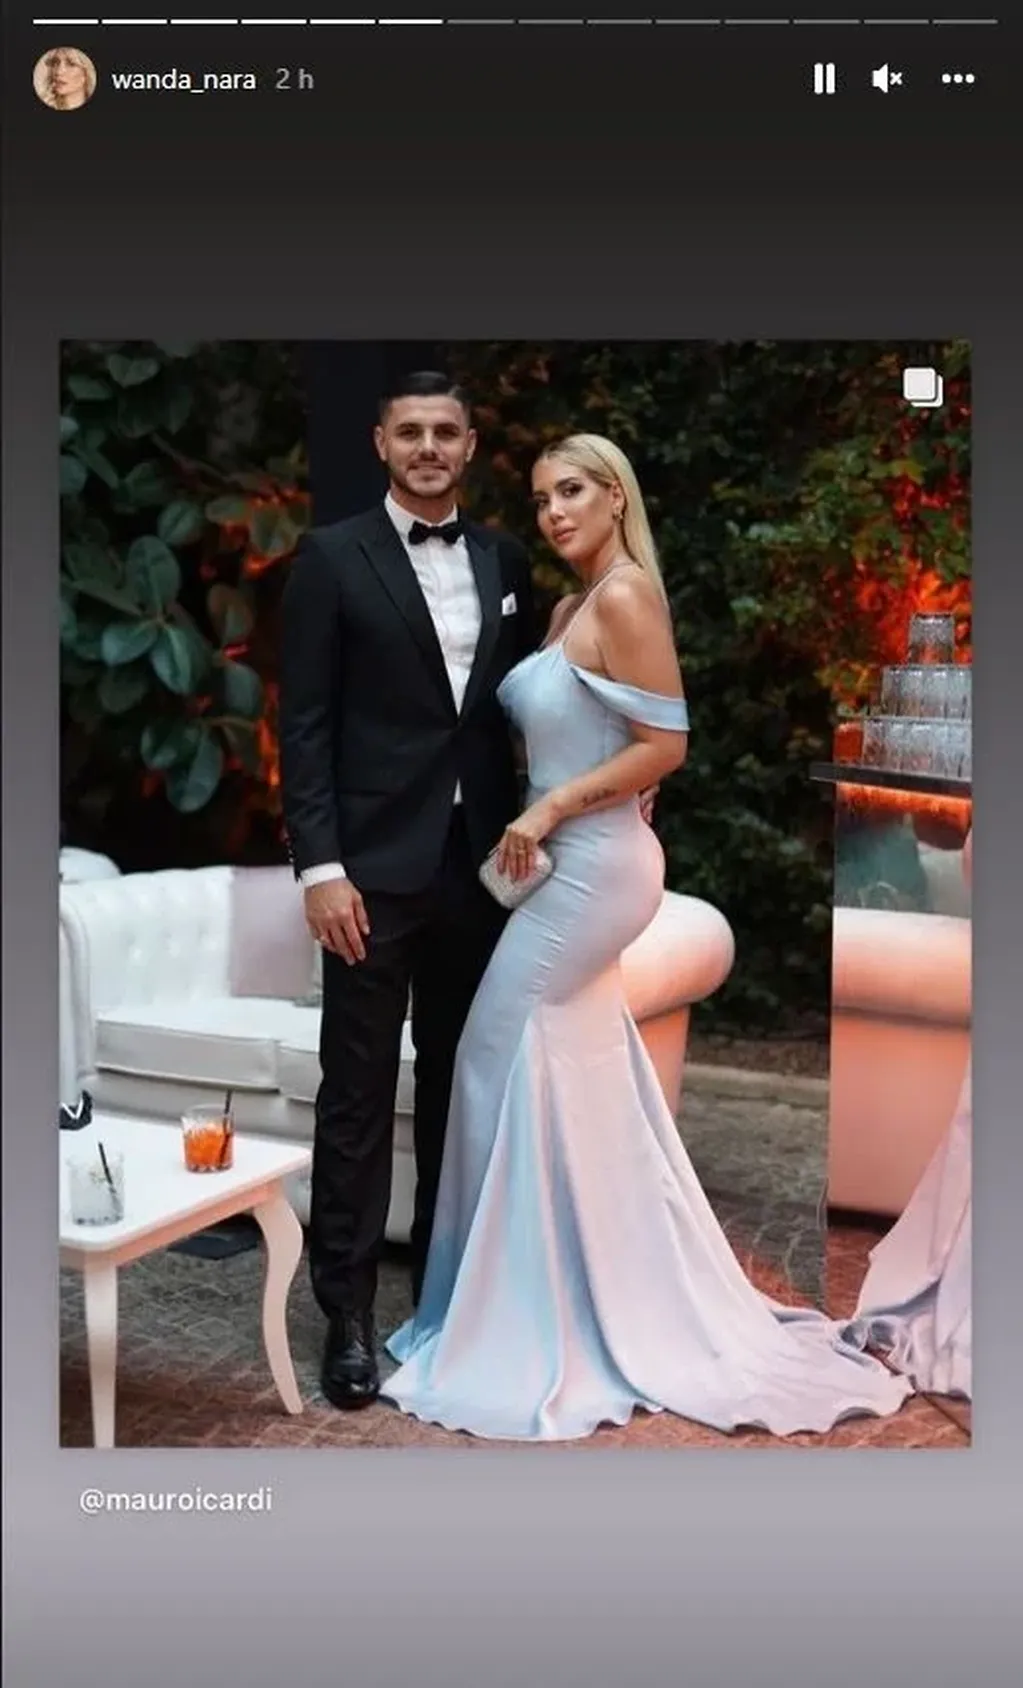 Más fotos de Mauro y Wanda desde adentro de la boda en Roma